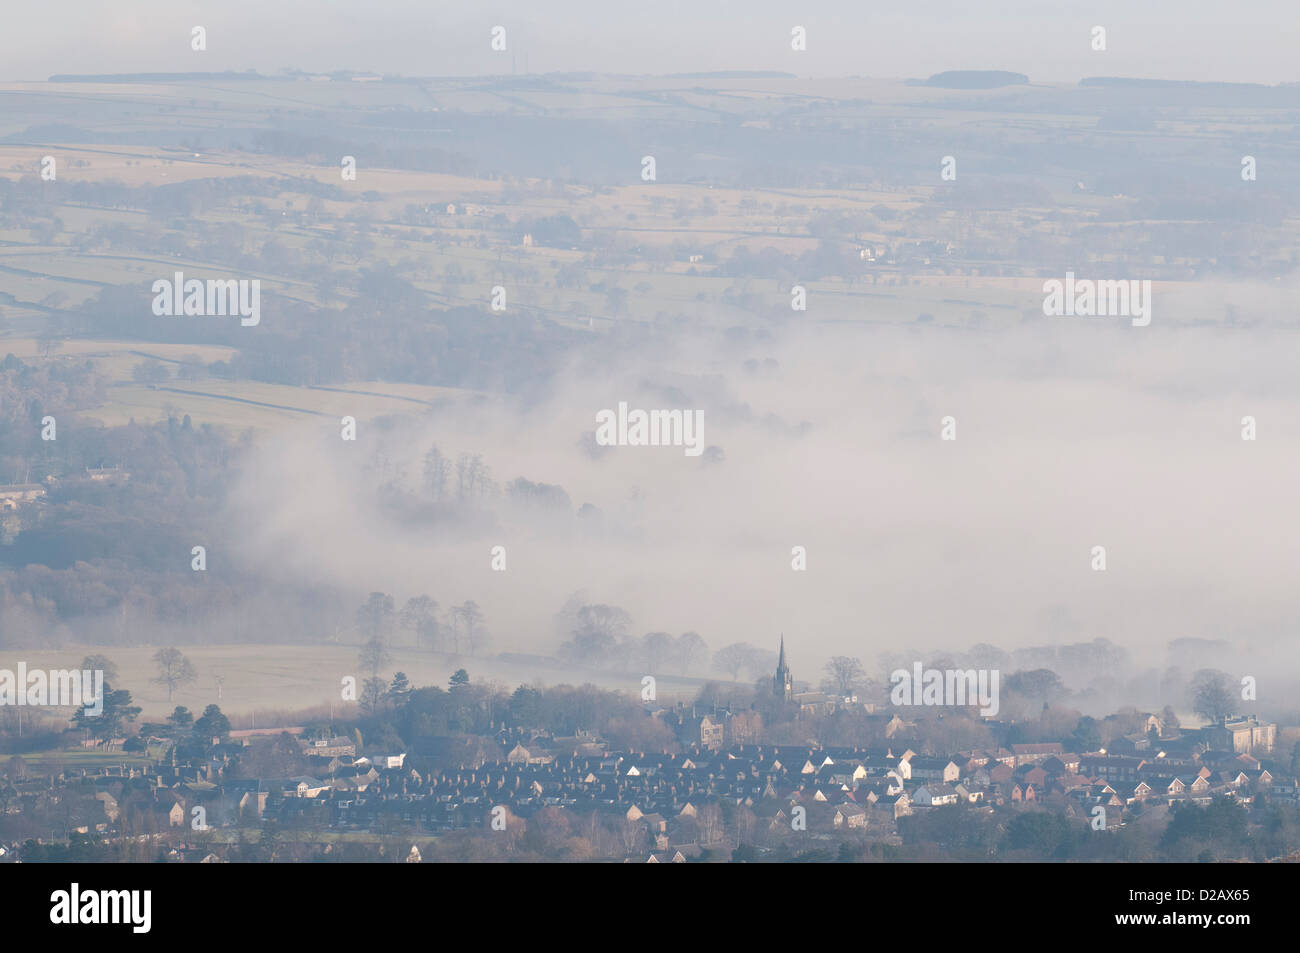 Fernverkehr, Nebel am frühen Morgen Blick auf malerische ländliche Tal & Dorf eingehüllt in Nebel oder Nebel - Burley in Bösingen, West Yorkshire, England, Großbritannien Stockfoto